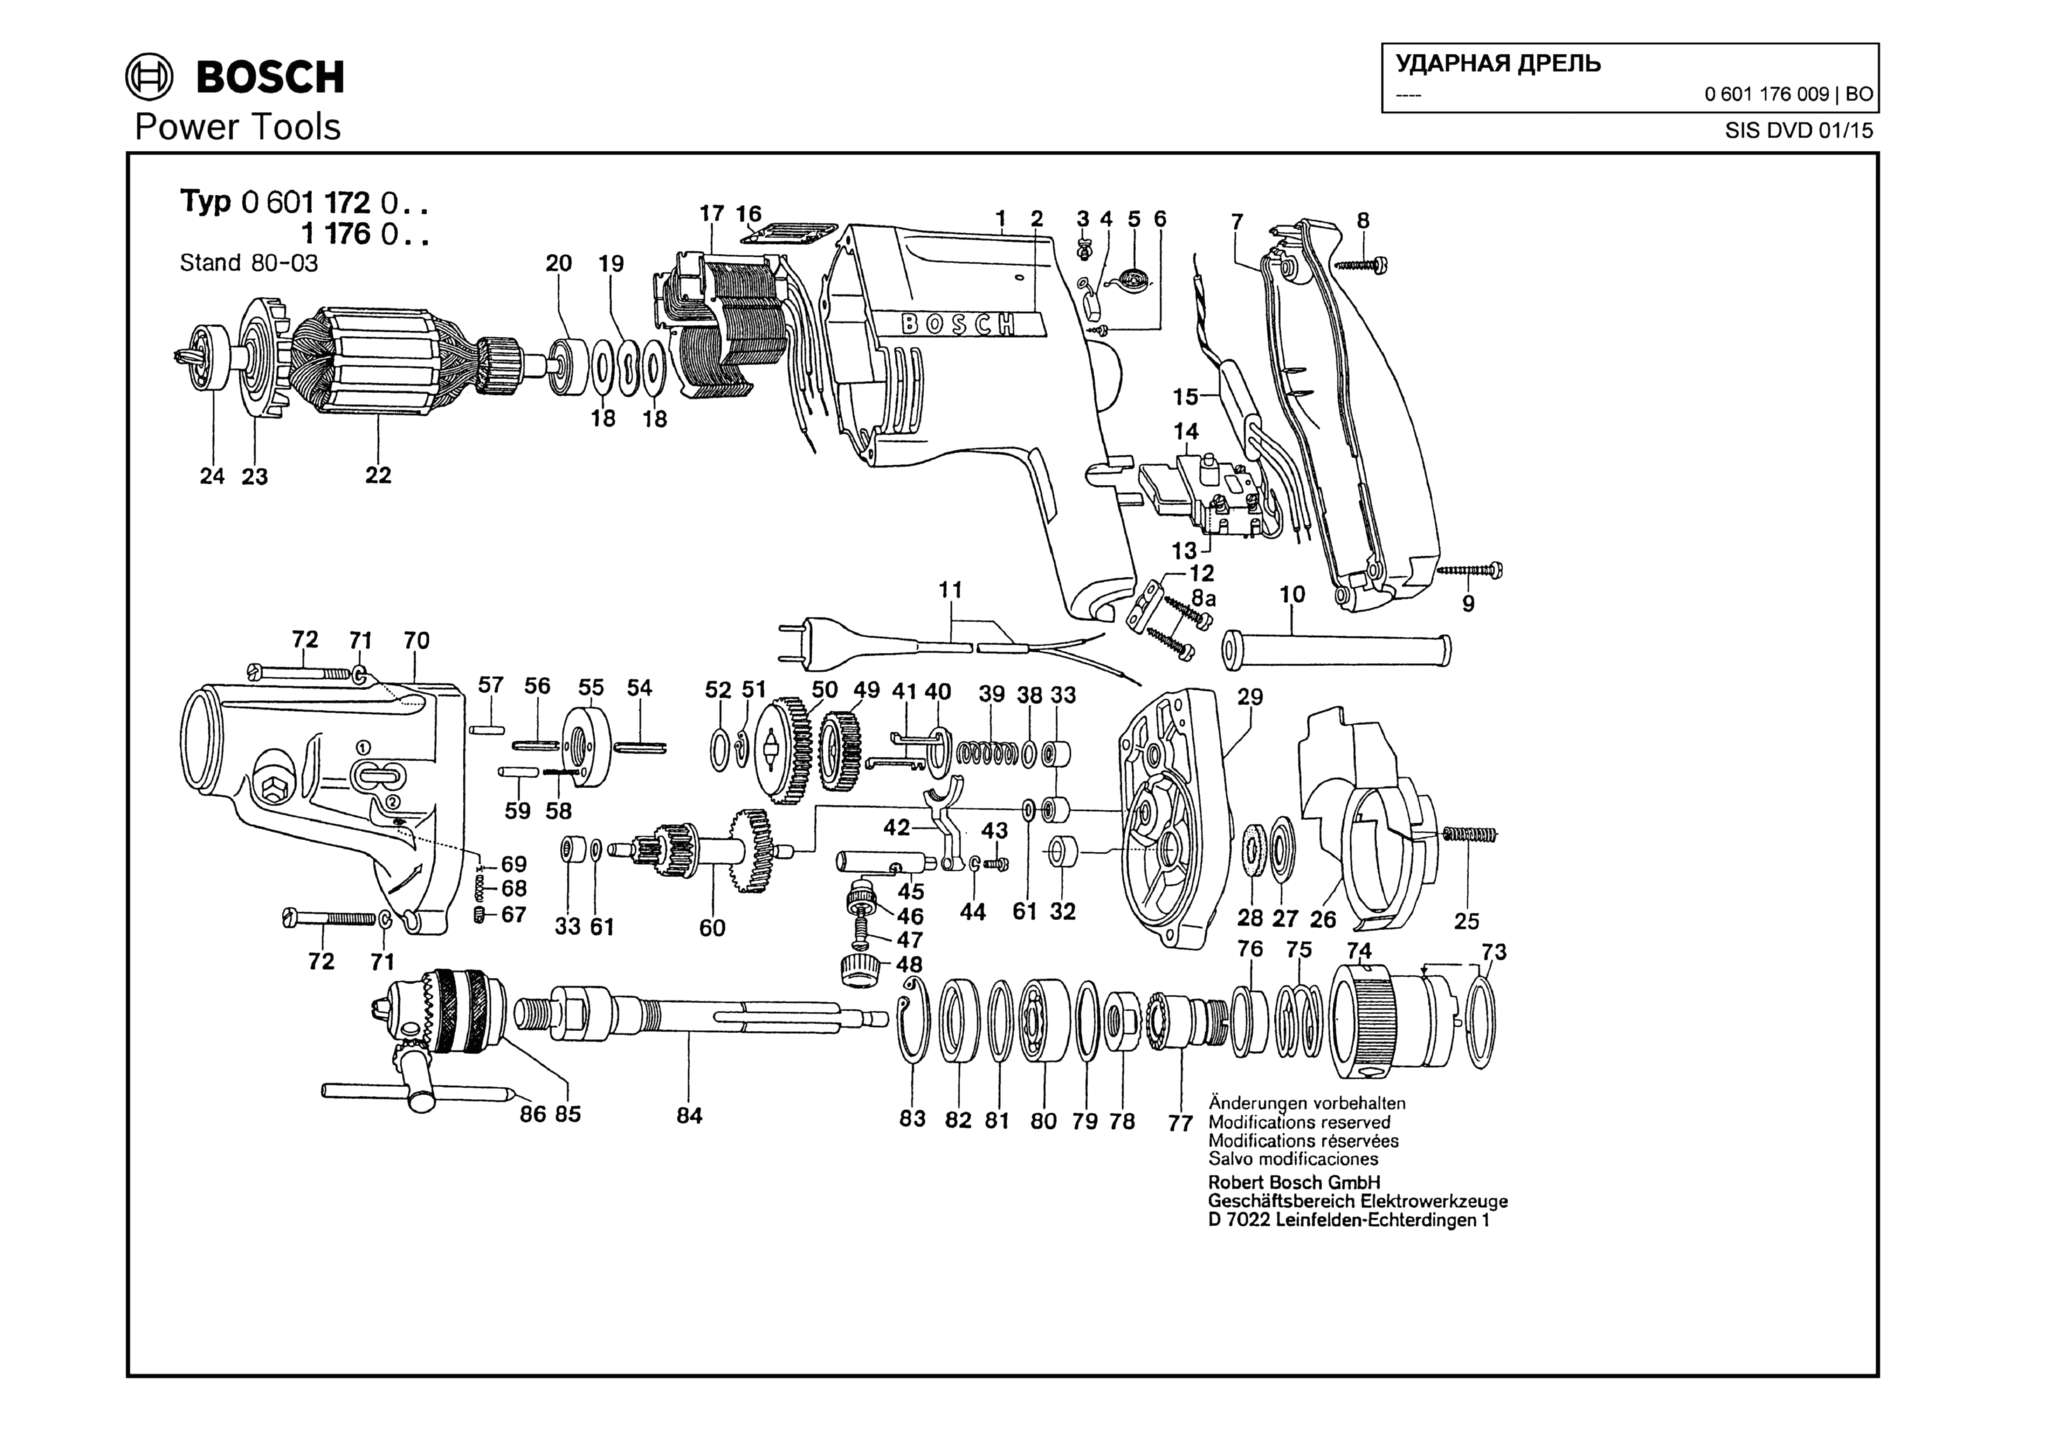 Запчасти, схема и деталировка Bosch (ТИП 0601176009)